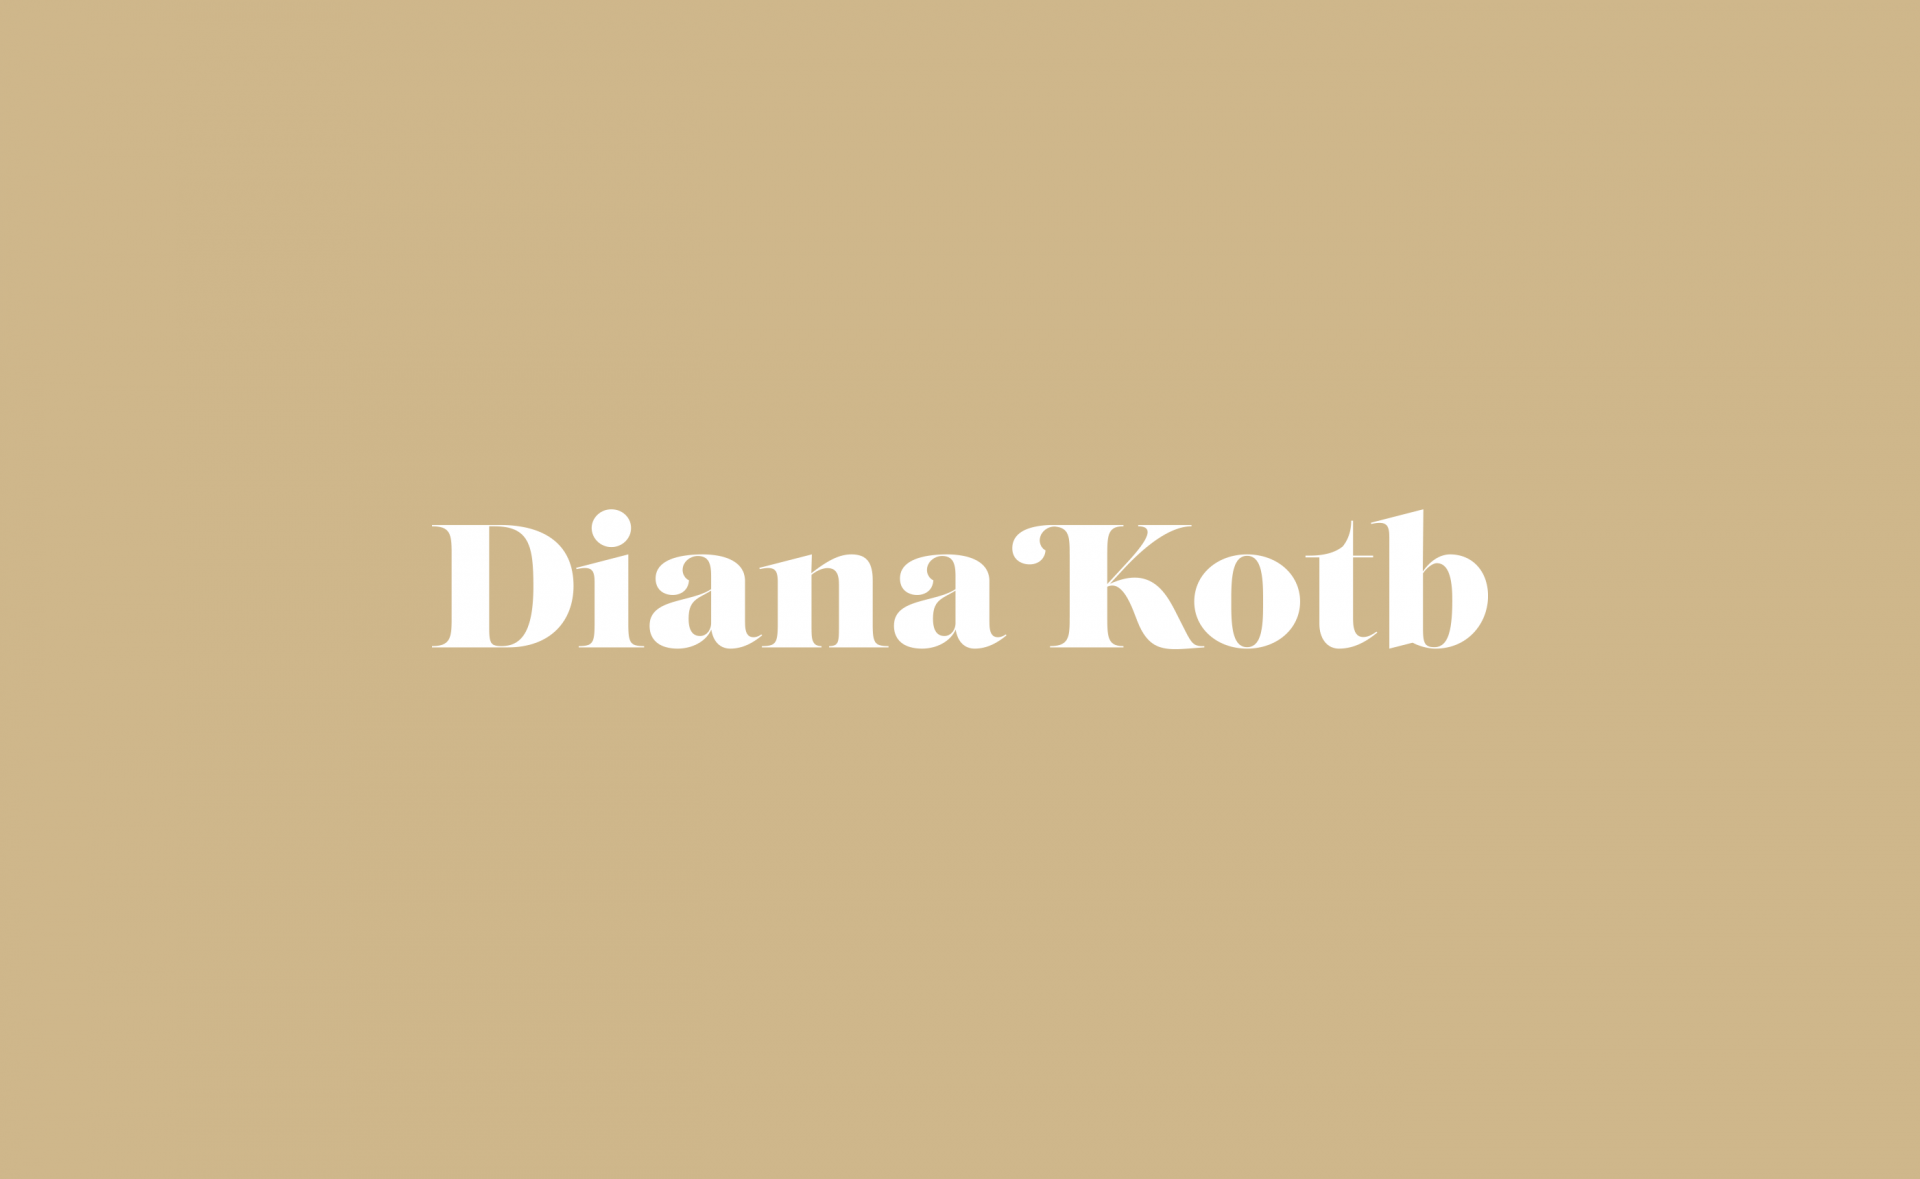 Diana Kotb